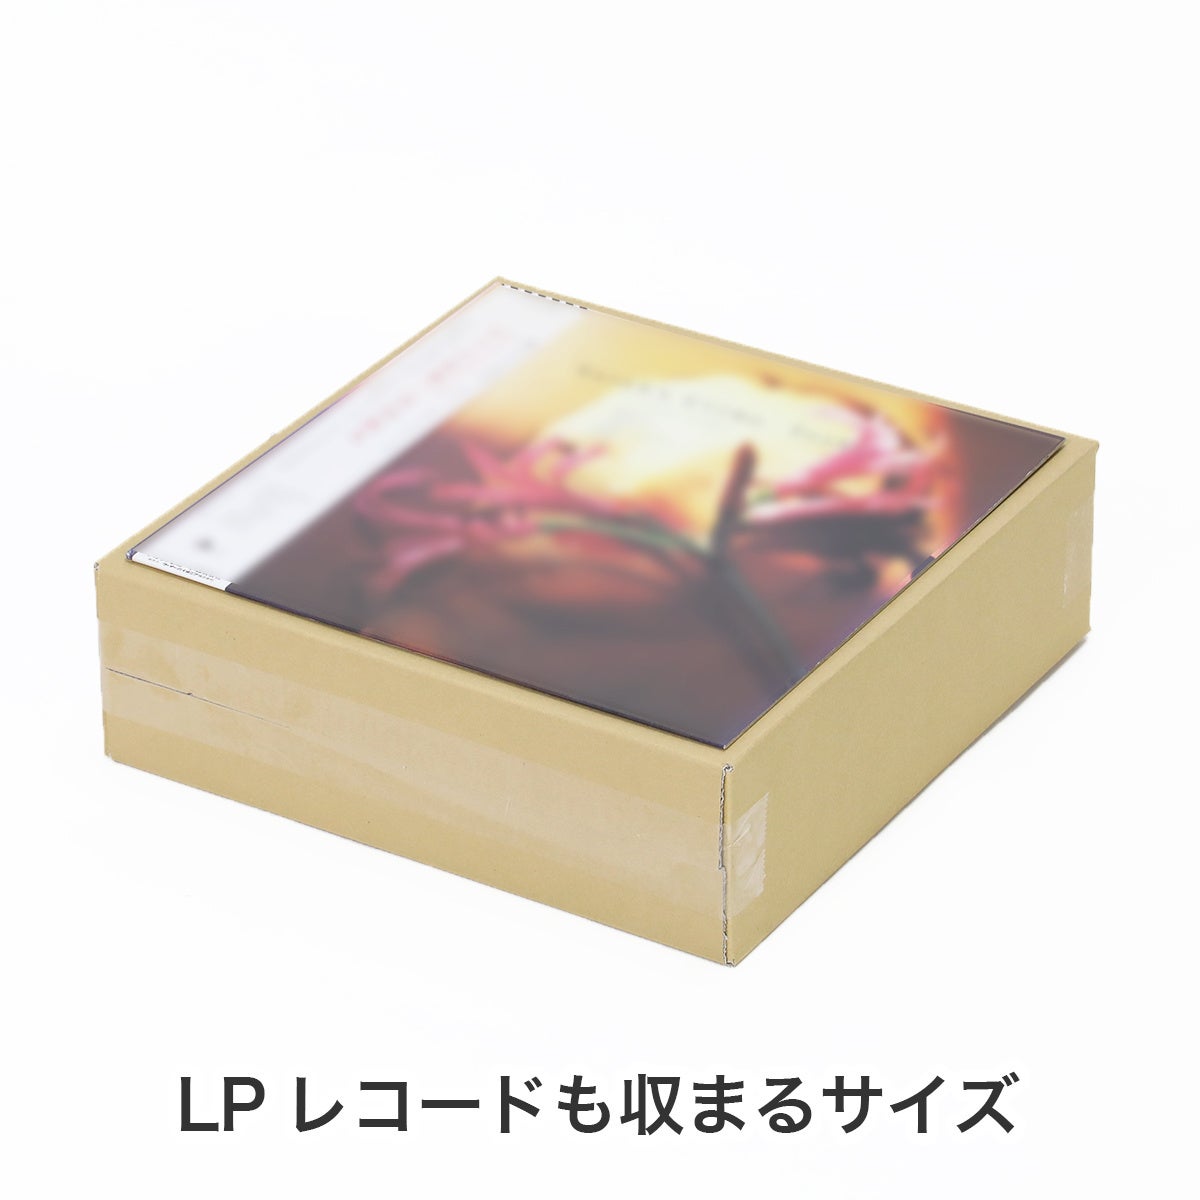 【LPレコードの梱包に大活躍】立てても寝かせても使える、正方形のダンボール箱が新登場